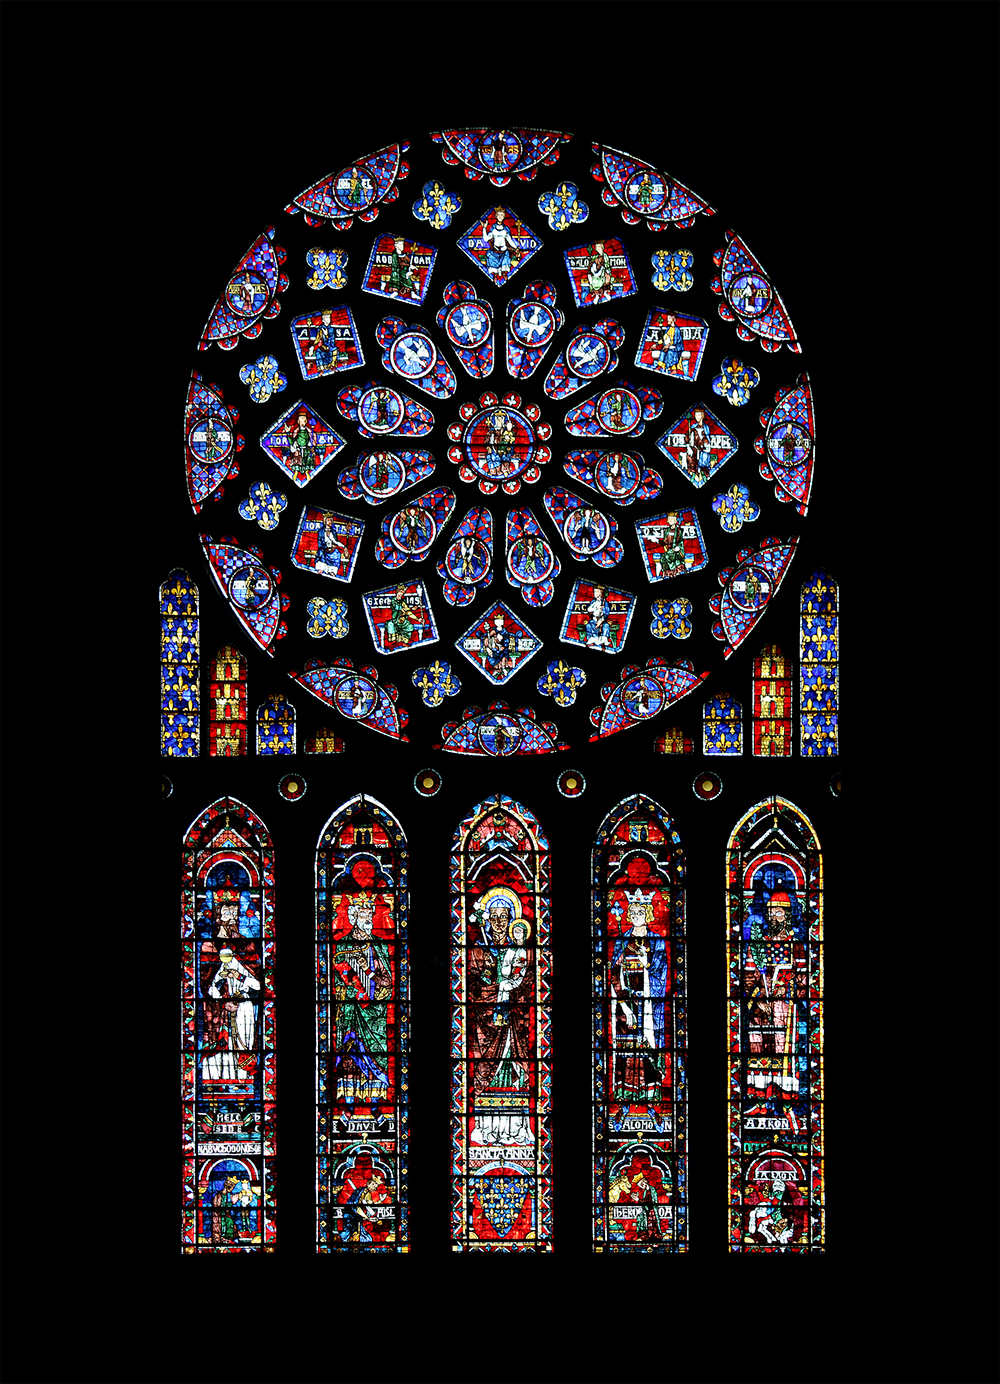 Chartres-székesegyház, Chartres, Franciaország<br />Csodálatos szépségéről ismert Chartres-székesegyház a gótikus építészet egyik legcsodálatosabb ólomüveg ablakának ad otthont. Központi rózsaablakai, valamint az alsó részükben rengeteg kék, lila és piros árnyalatú ólomüveg gazdag, kék színű éreti fényt hoz a székesegyházba.<br />